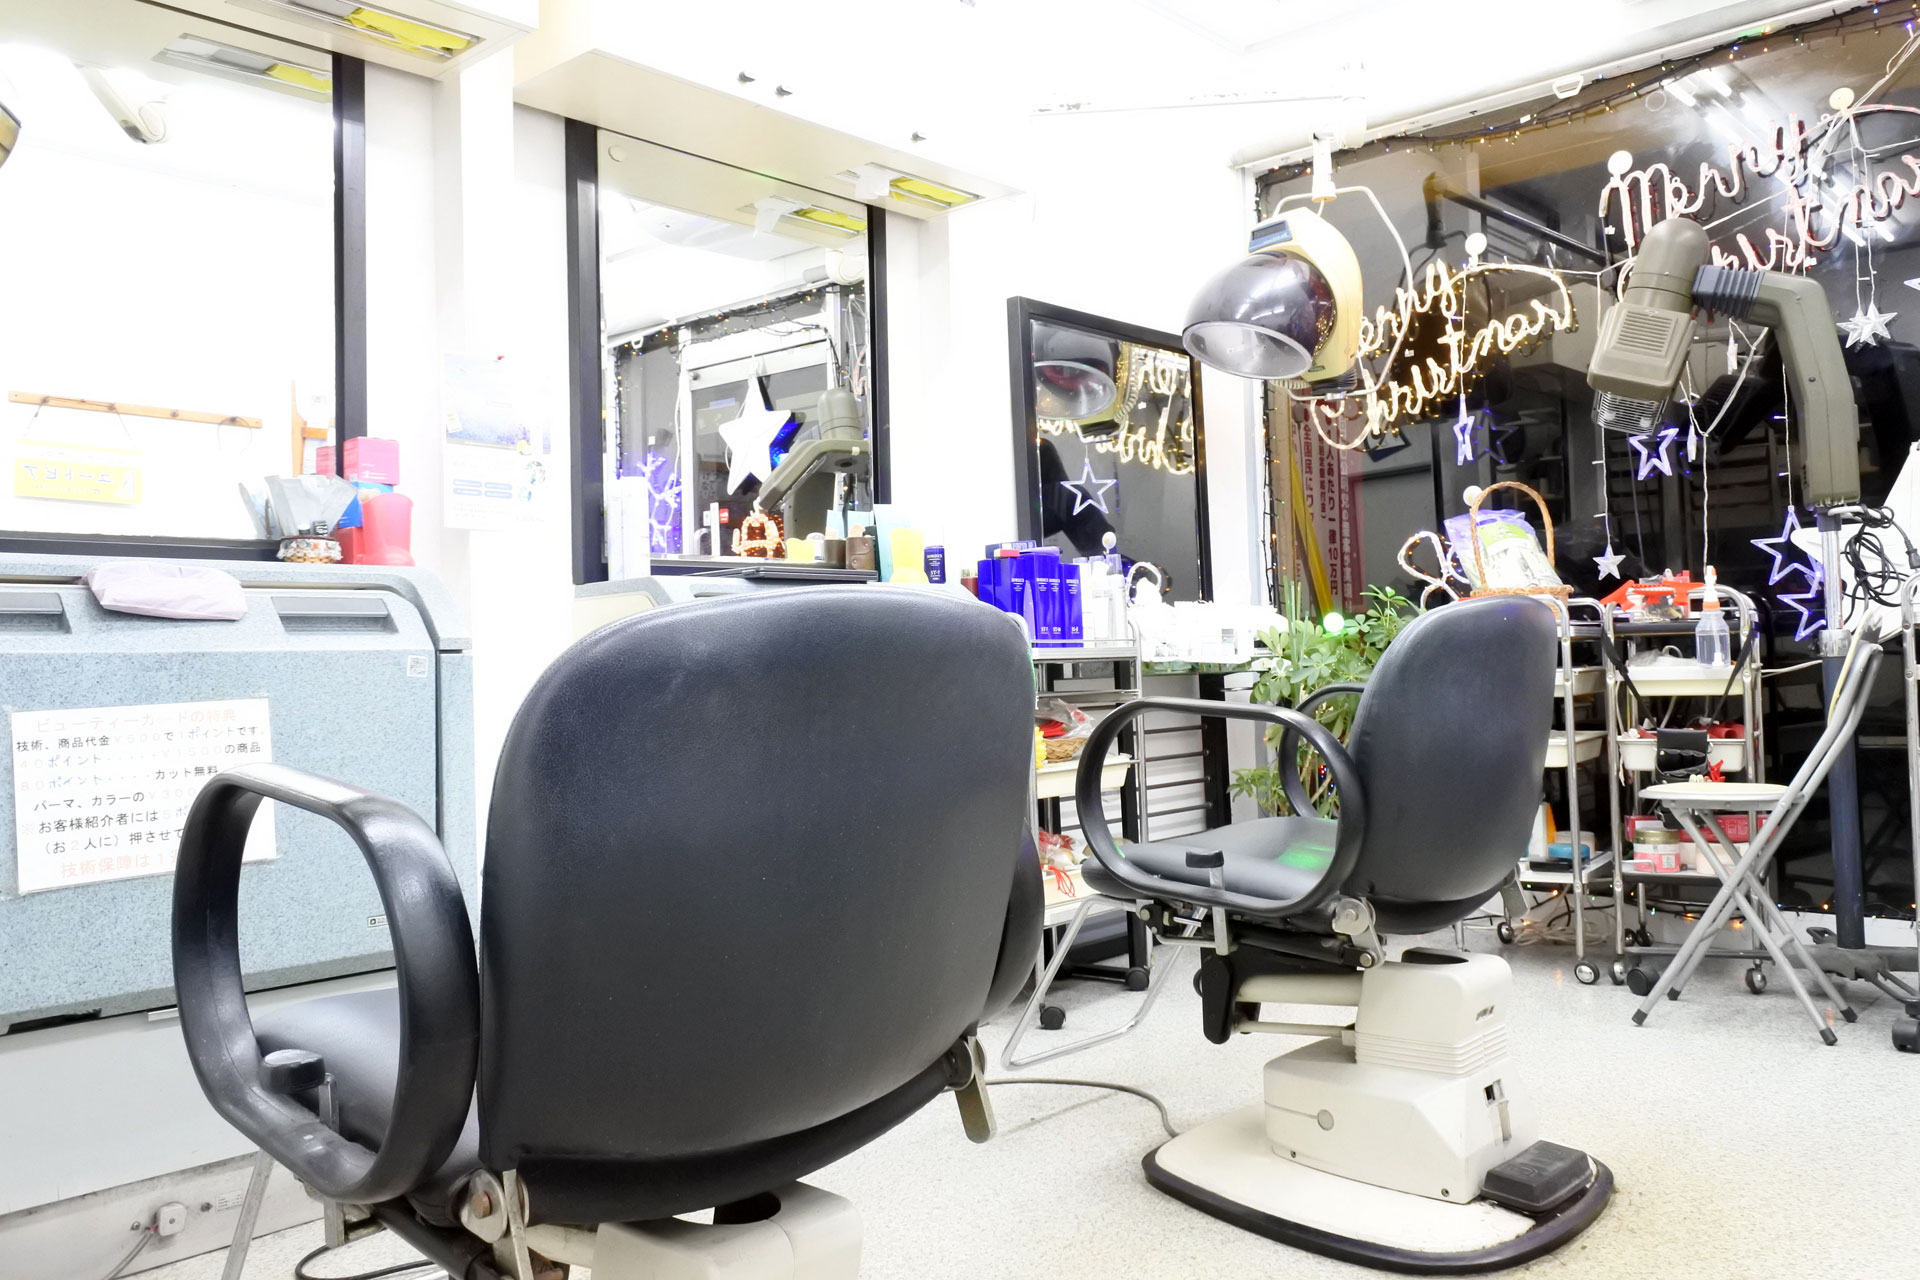 男性にも人気のエステやヘッドスパ、レディースシェービングなら貝塚市・貝塚久保団地近くの美容室「ビューティーサロンユートピア」。福祉理美容士による訪問カットも対応しております。